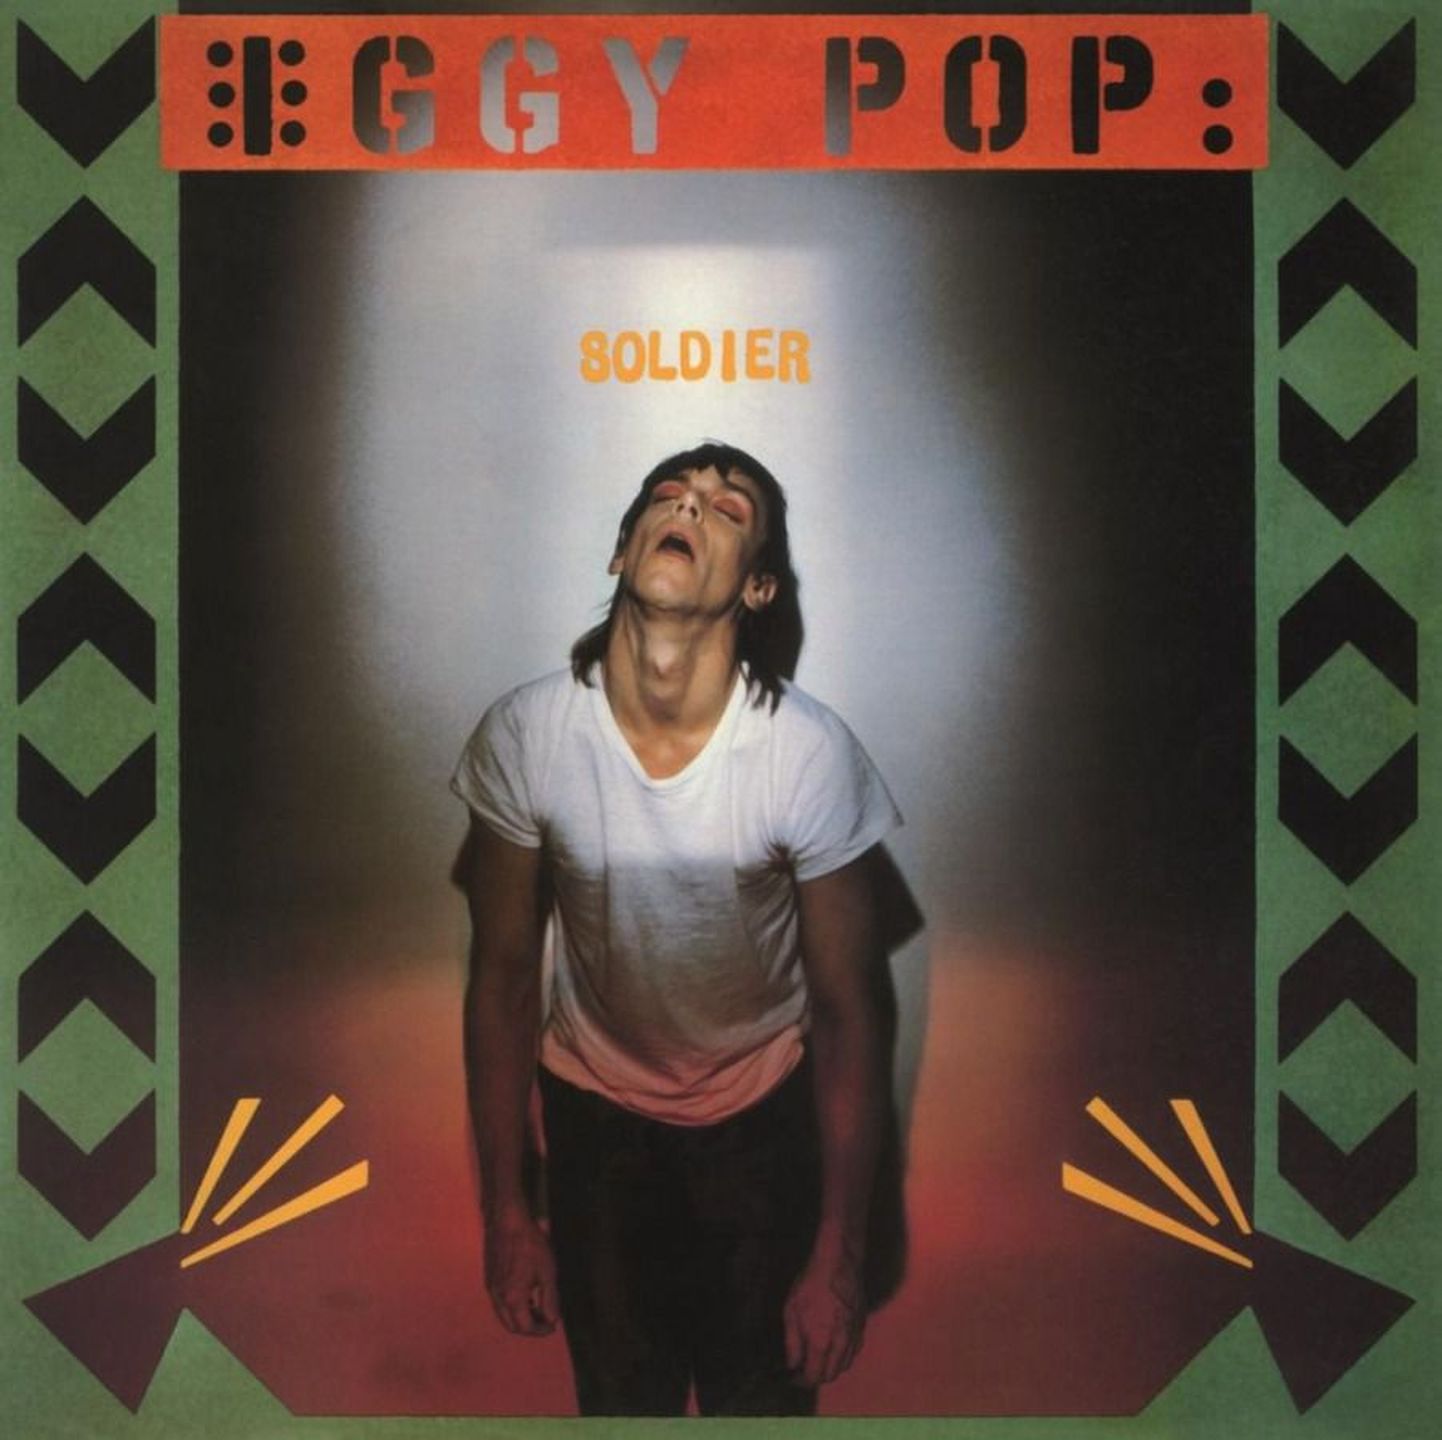 Iggy Pop- Soldier